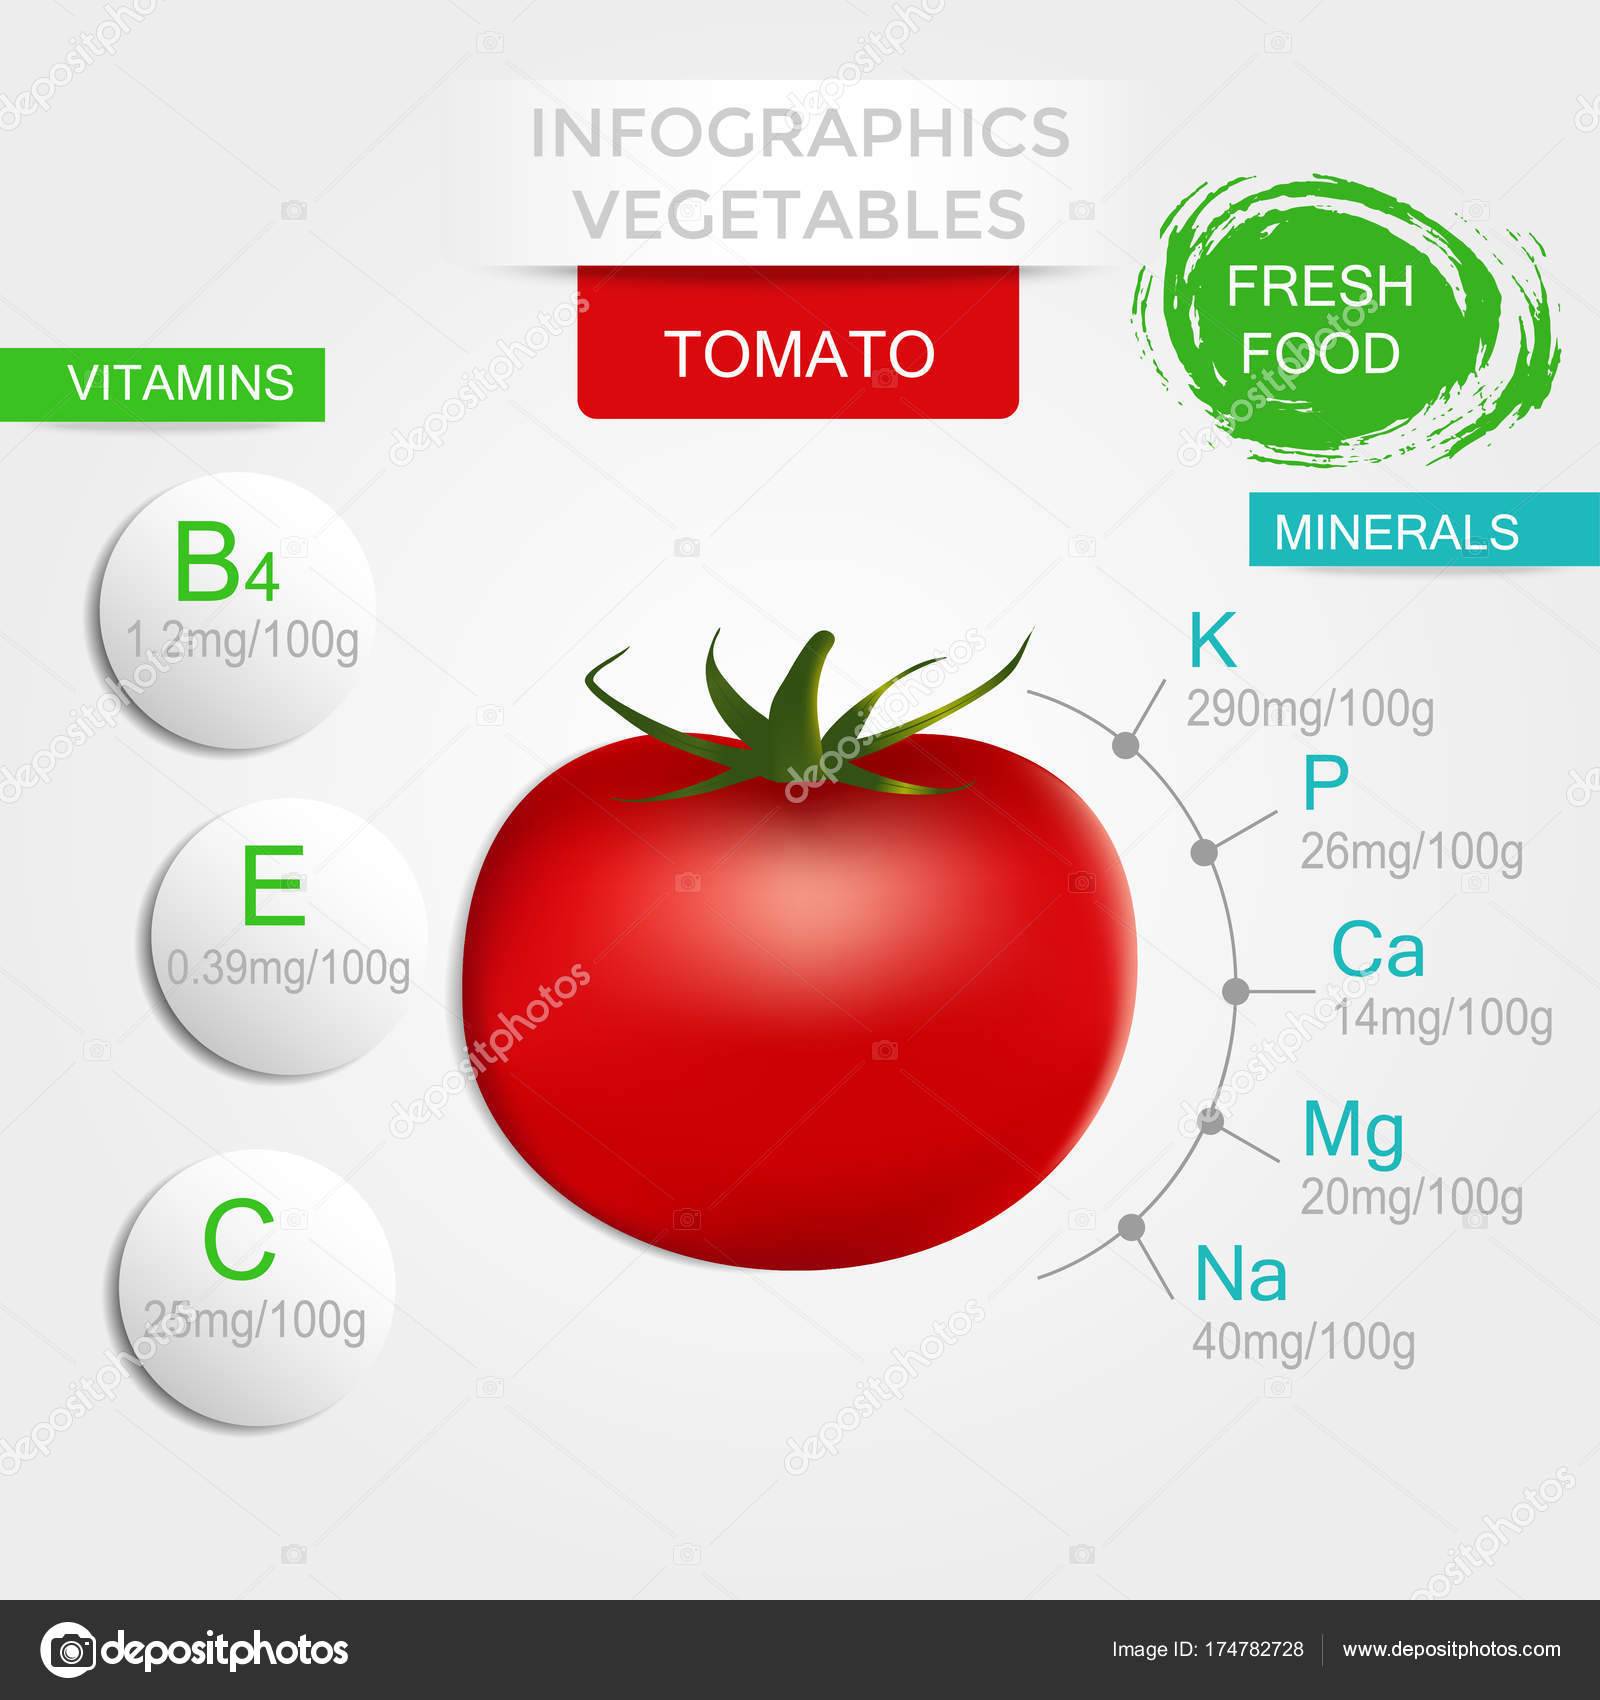 Какие витамины содержатся в помидорах?